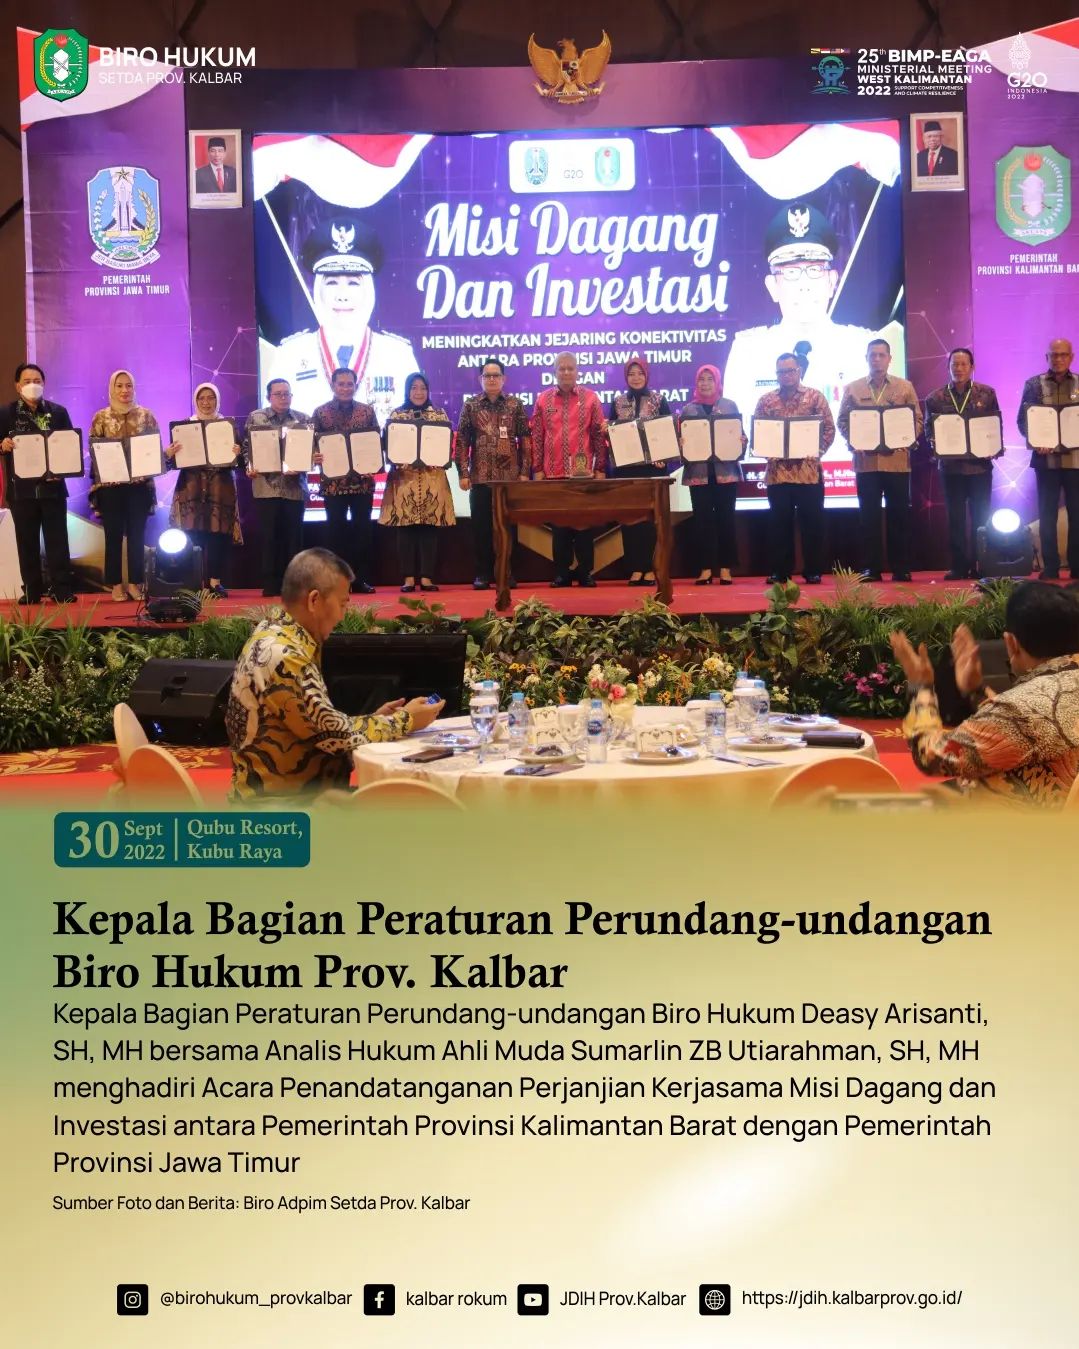 Penandatanganan Perjanjian Kerjasama Misi Dagang dan Investasi antara Pemerintah Provinsi Kalimantan Barat dengan Pemerintah Provinsi Jawa Timur 30 September 2022